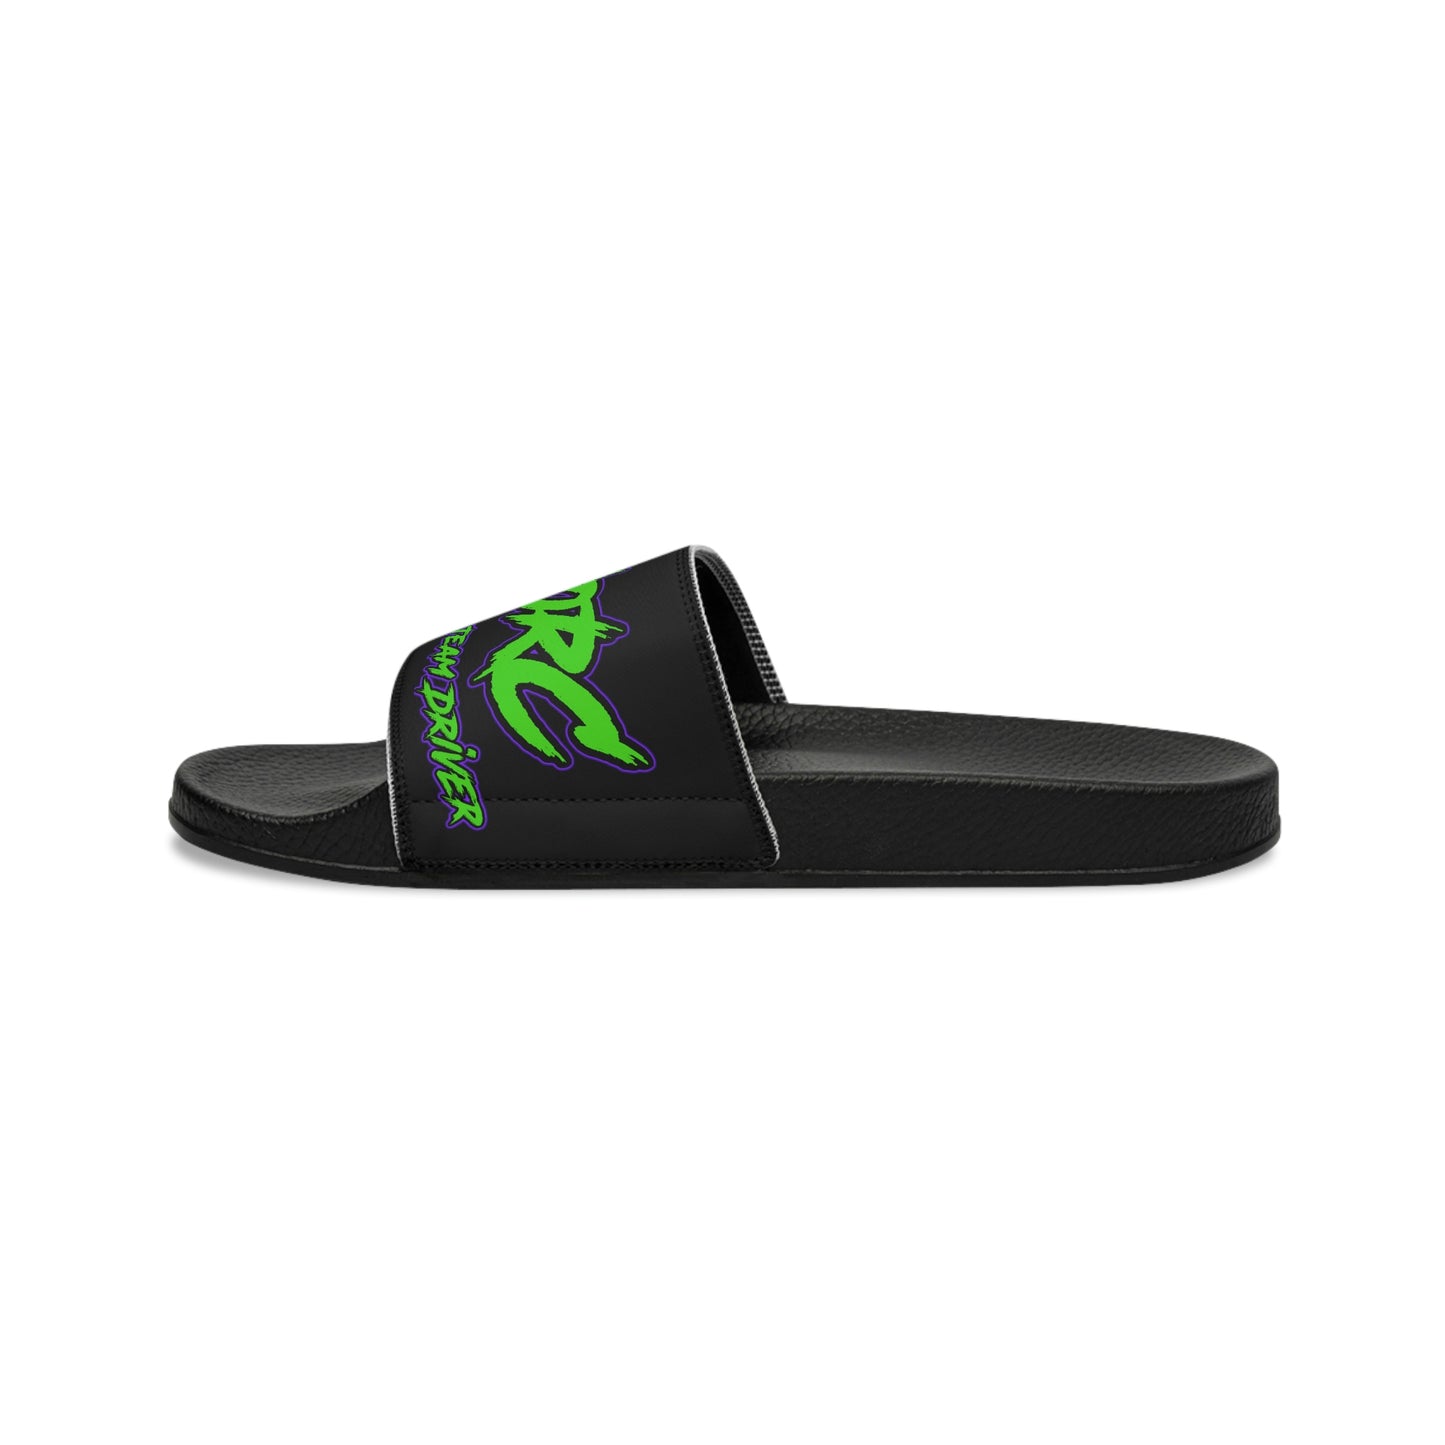 DinoRC Men's Slide Sandals